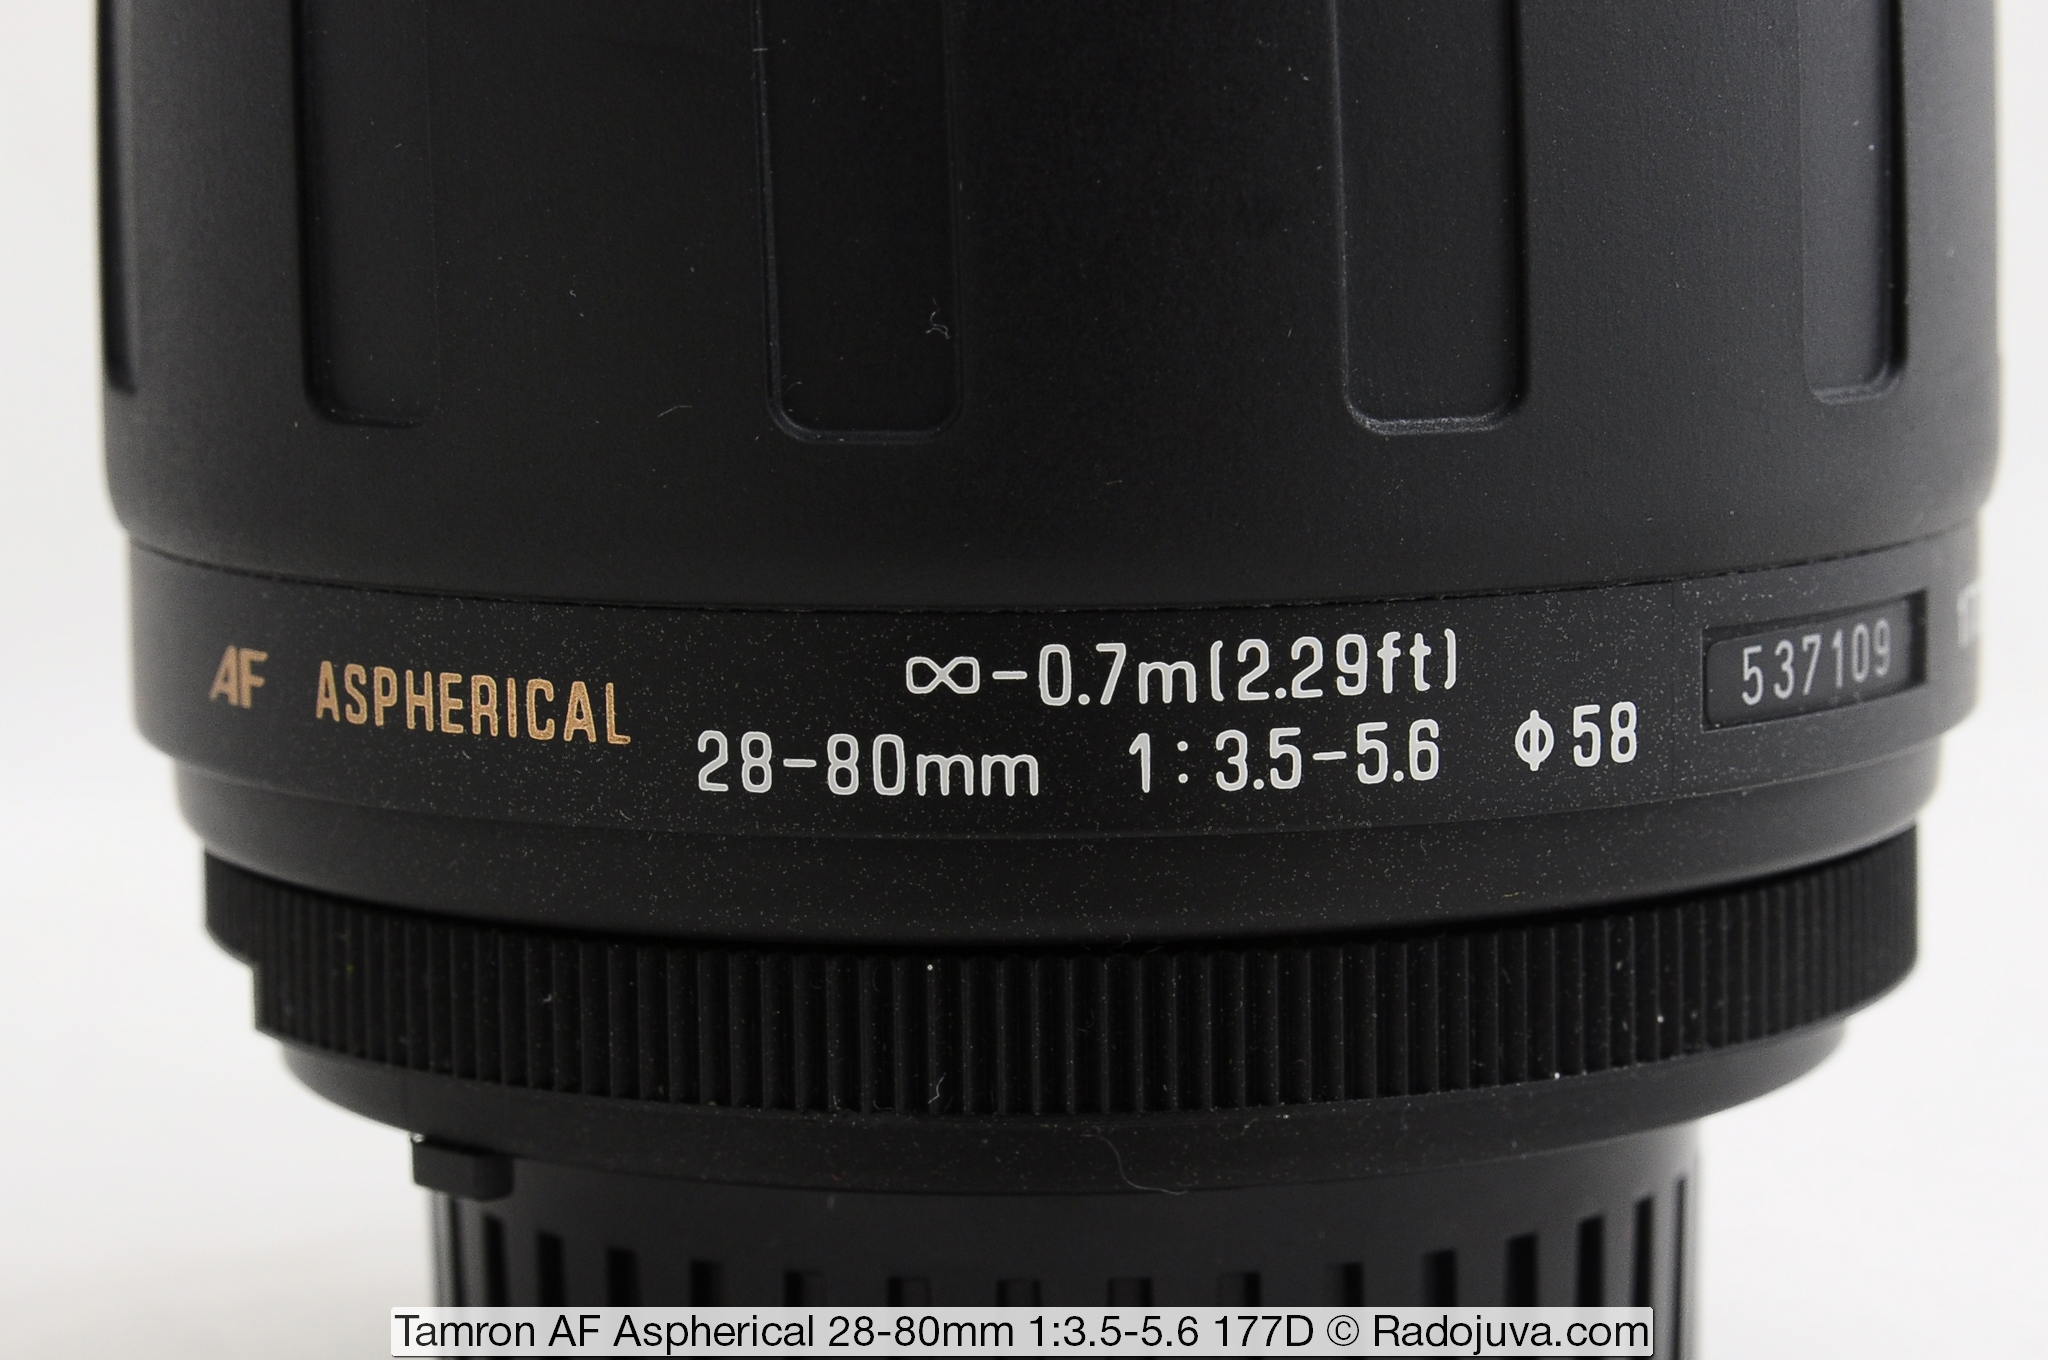 Tamron AF Aspherical 28-80mm 1:3.5-5.6 177D